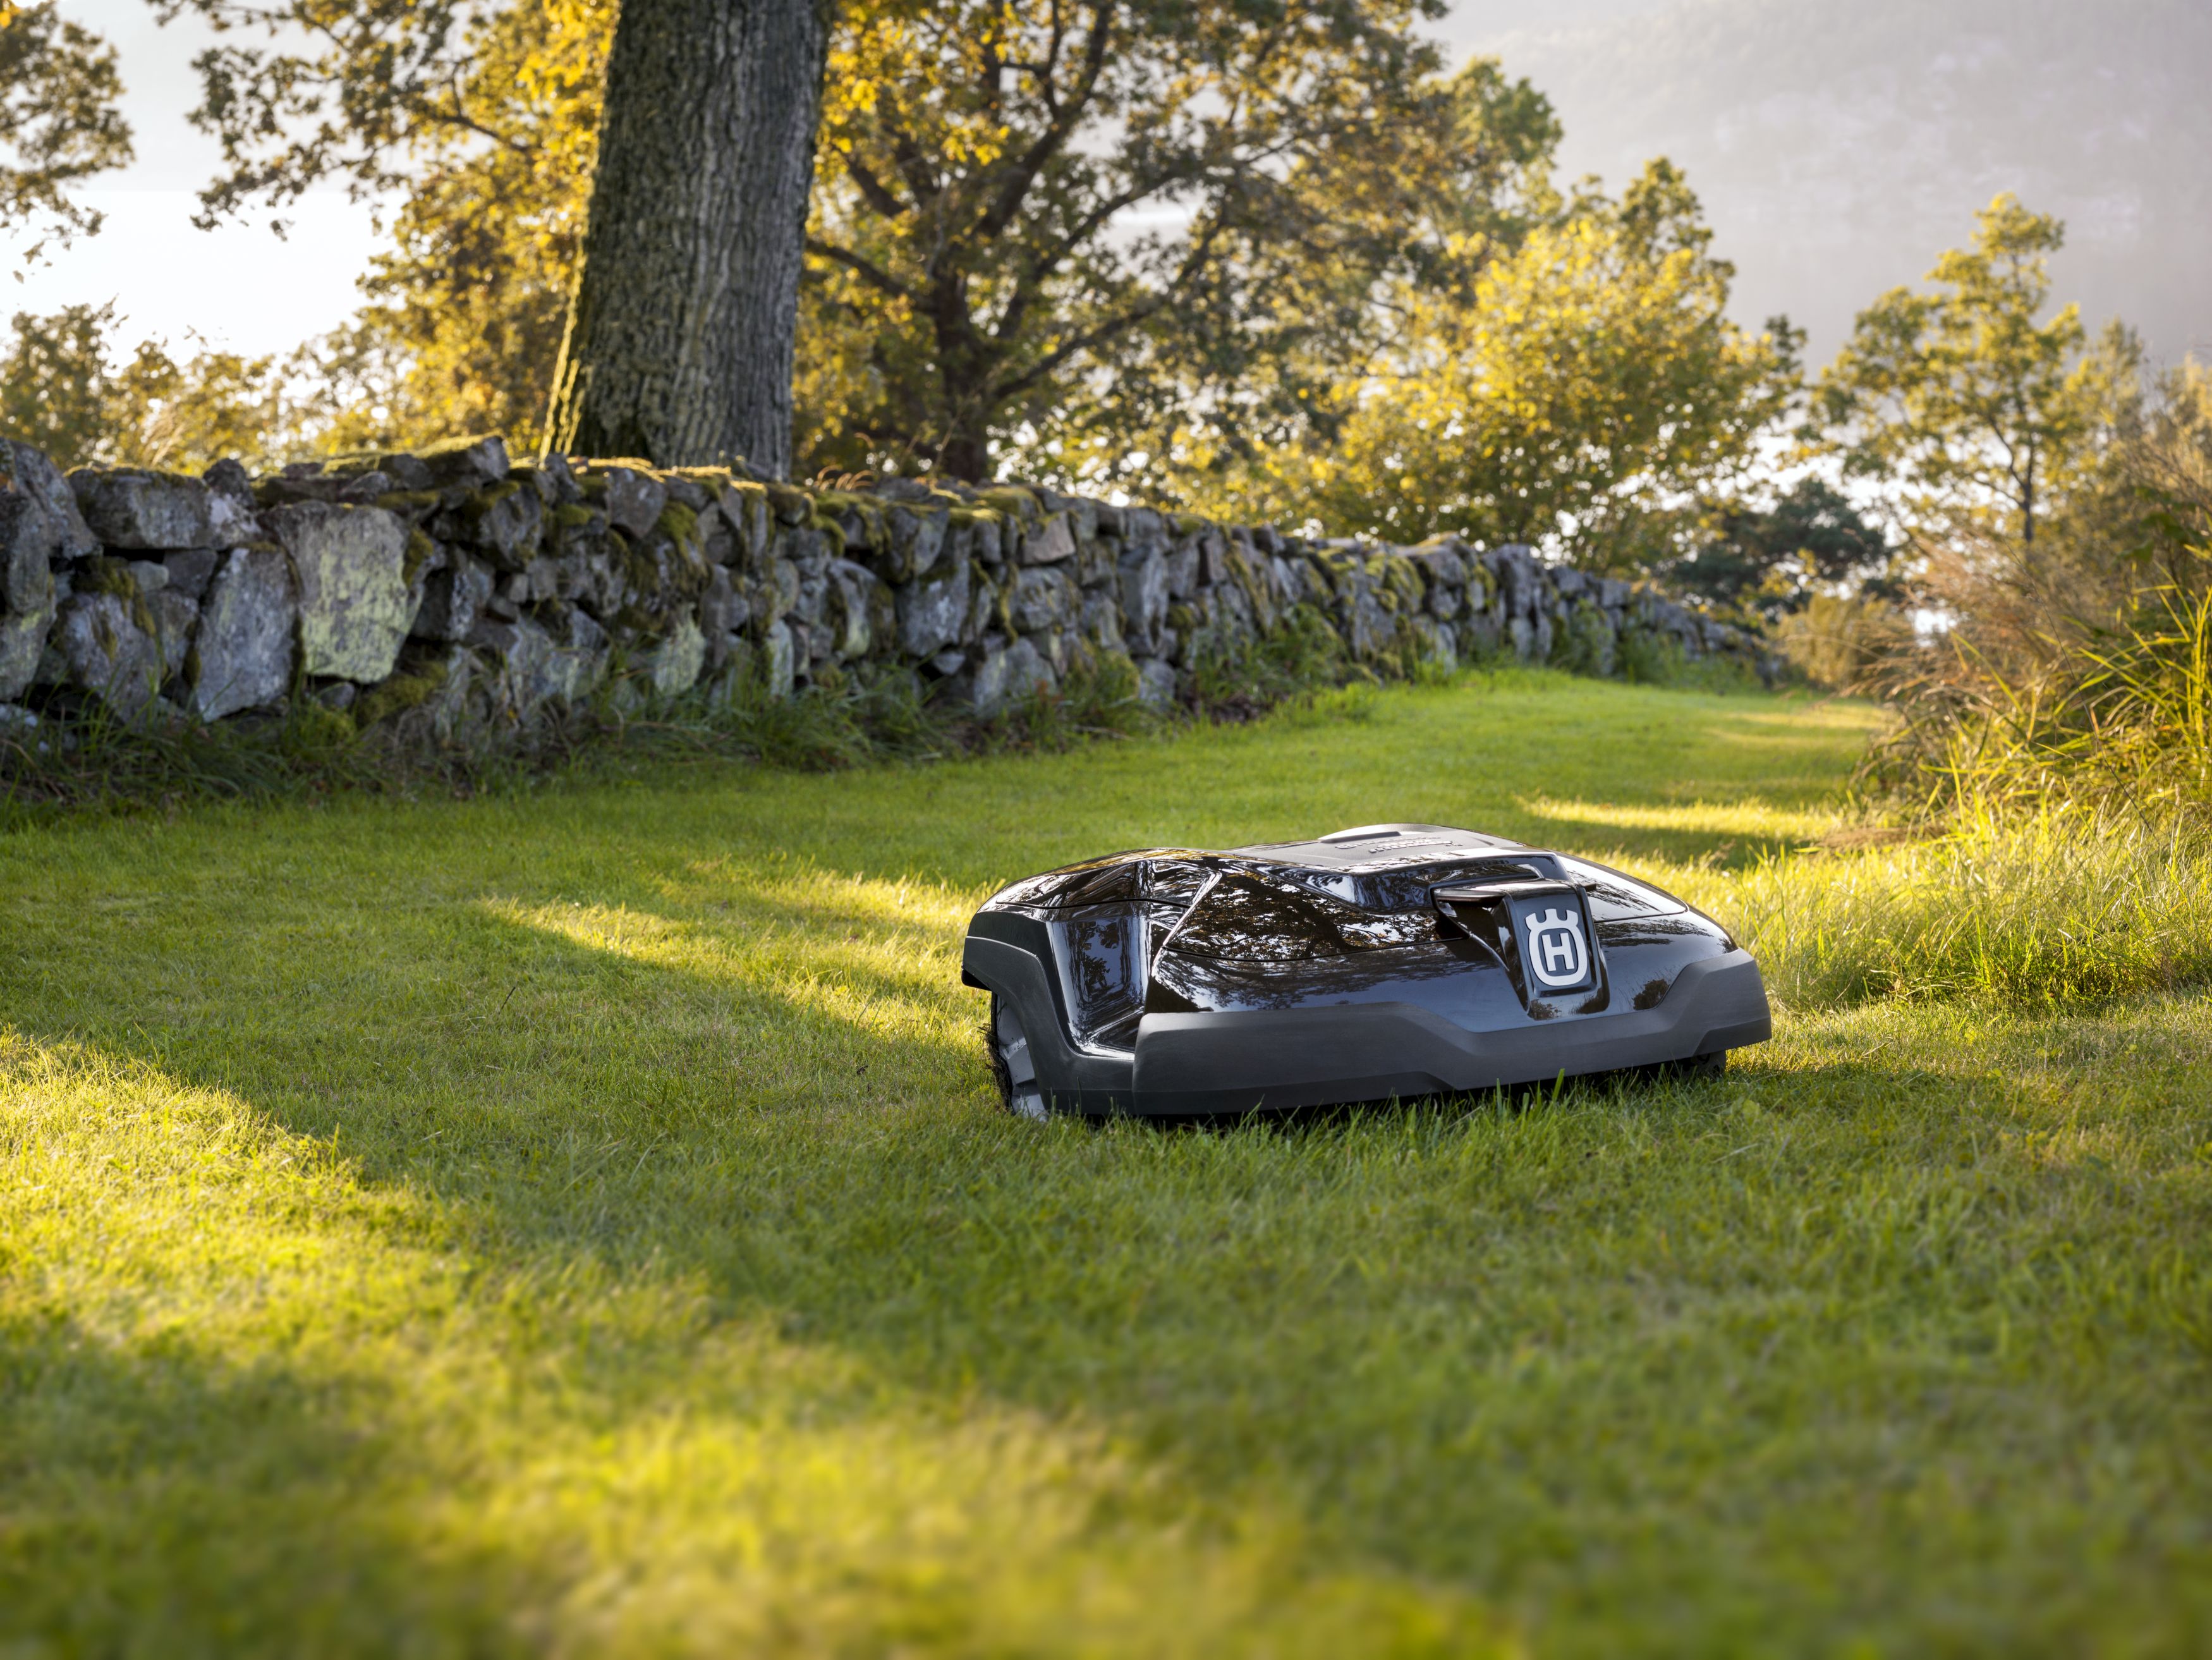 Melns Husqvarna zāles pļāvējs robots – Automower 315 modelis, darbības demonstrācija pļaujot zāli